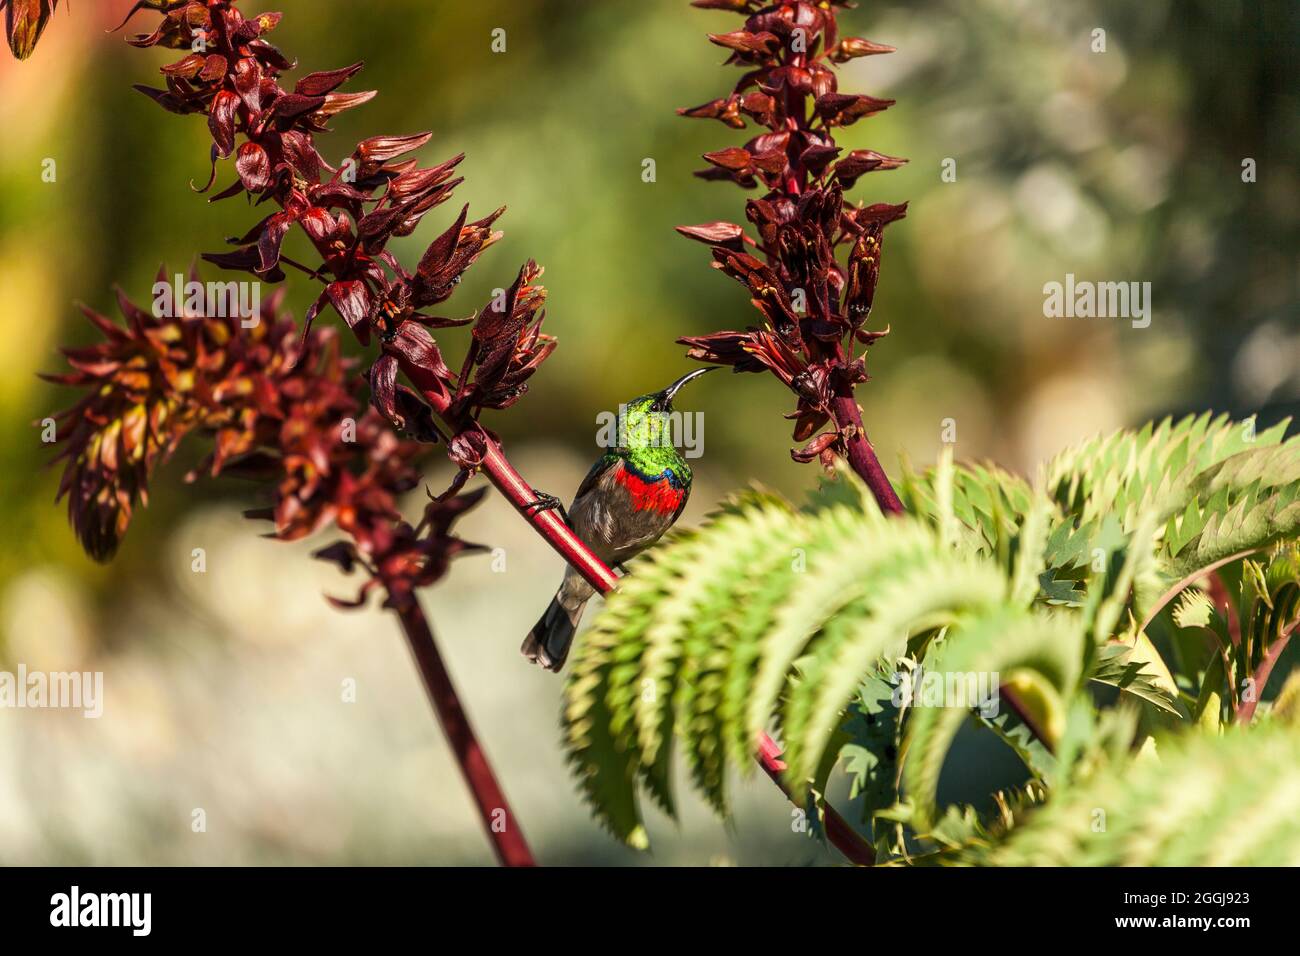 Pájaro de sol de cuello doble o menor del sur en el arbusto de miel - Cinnyris chalybeus en Melianthus Major Foto de stock